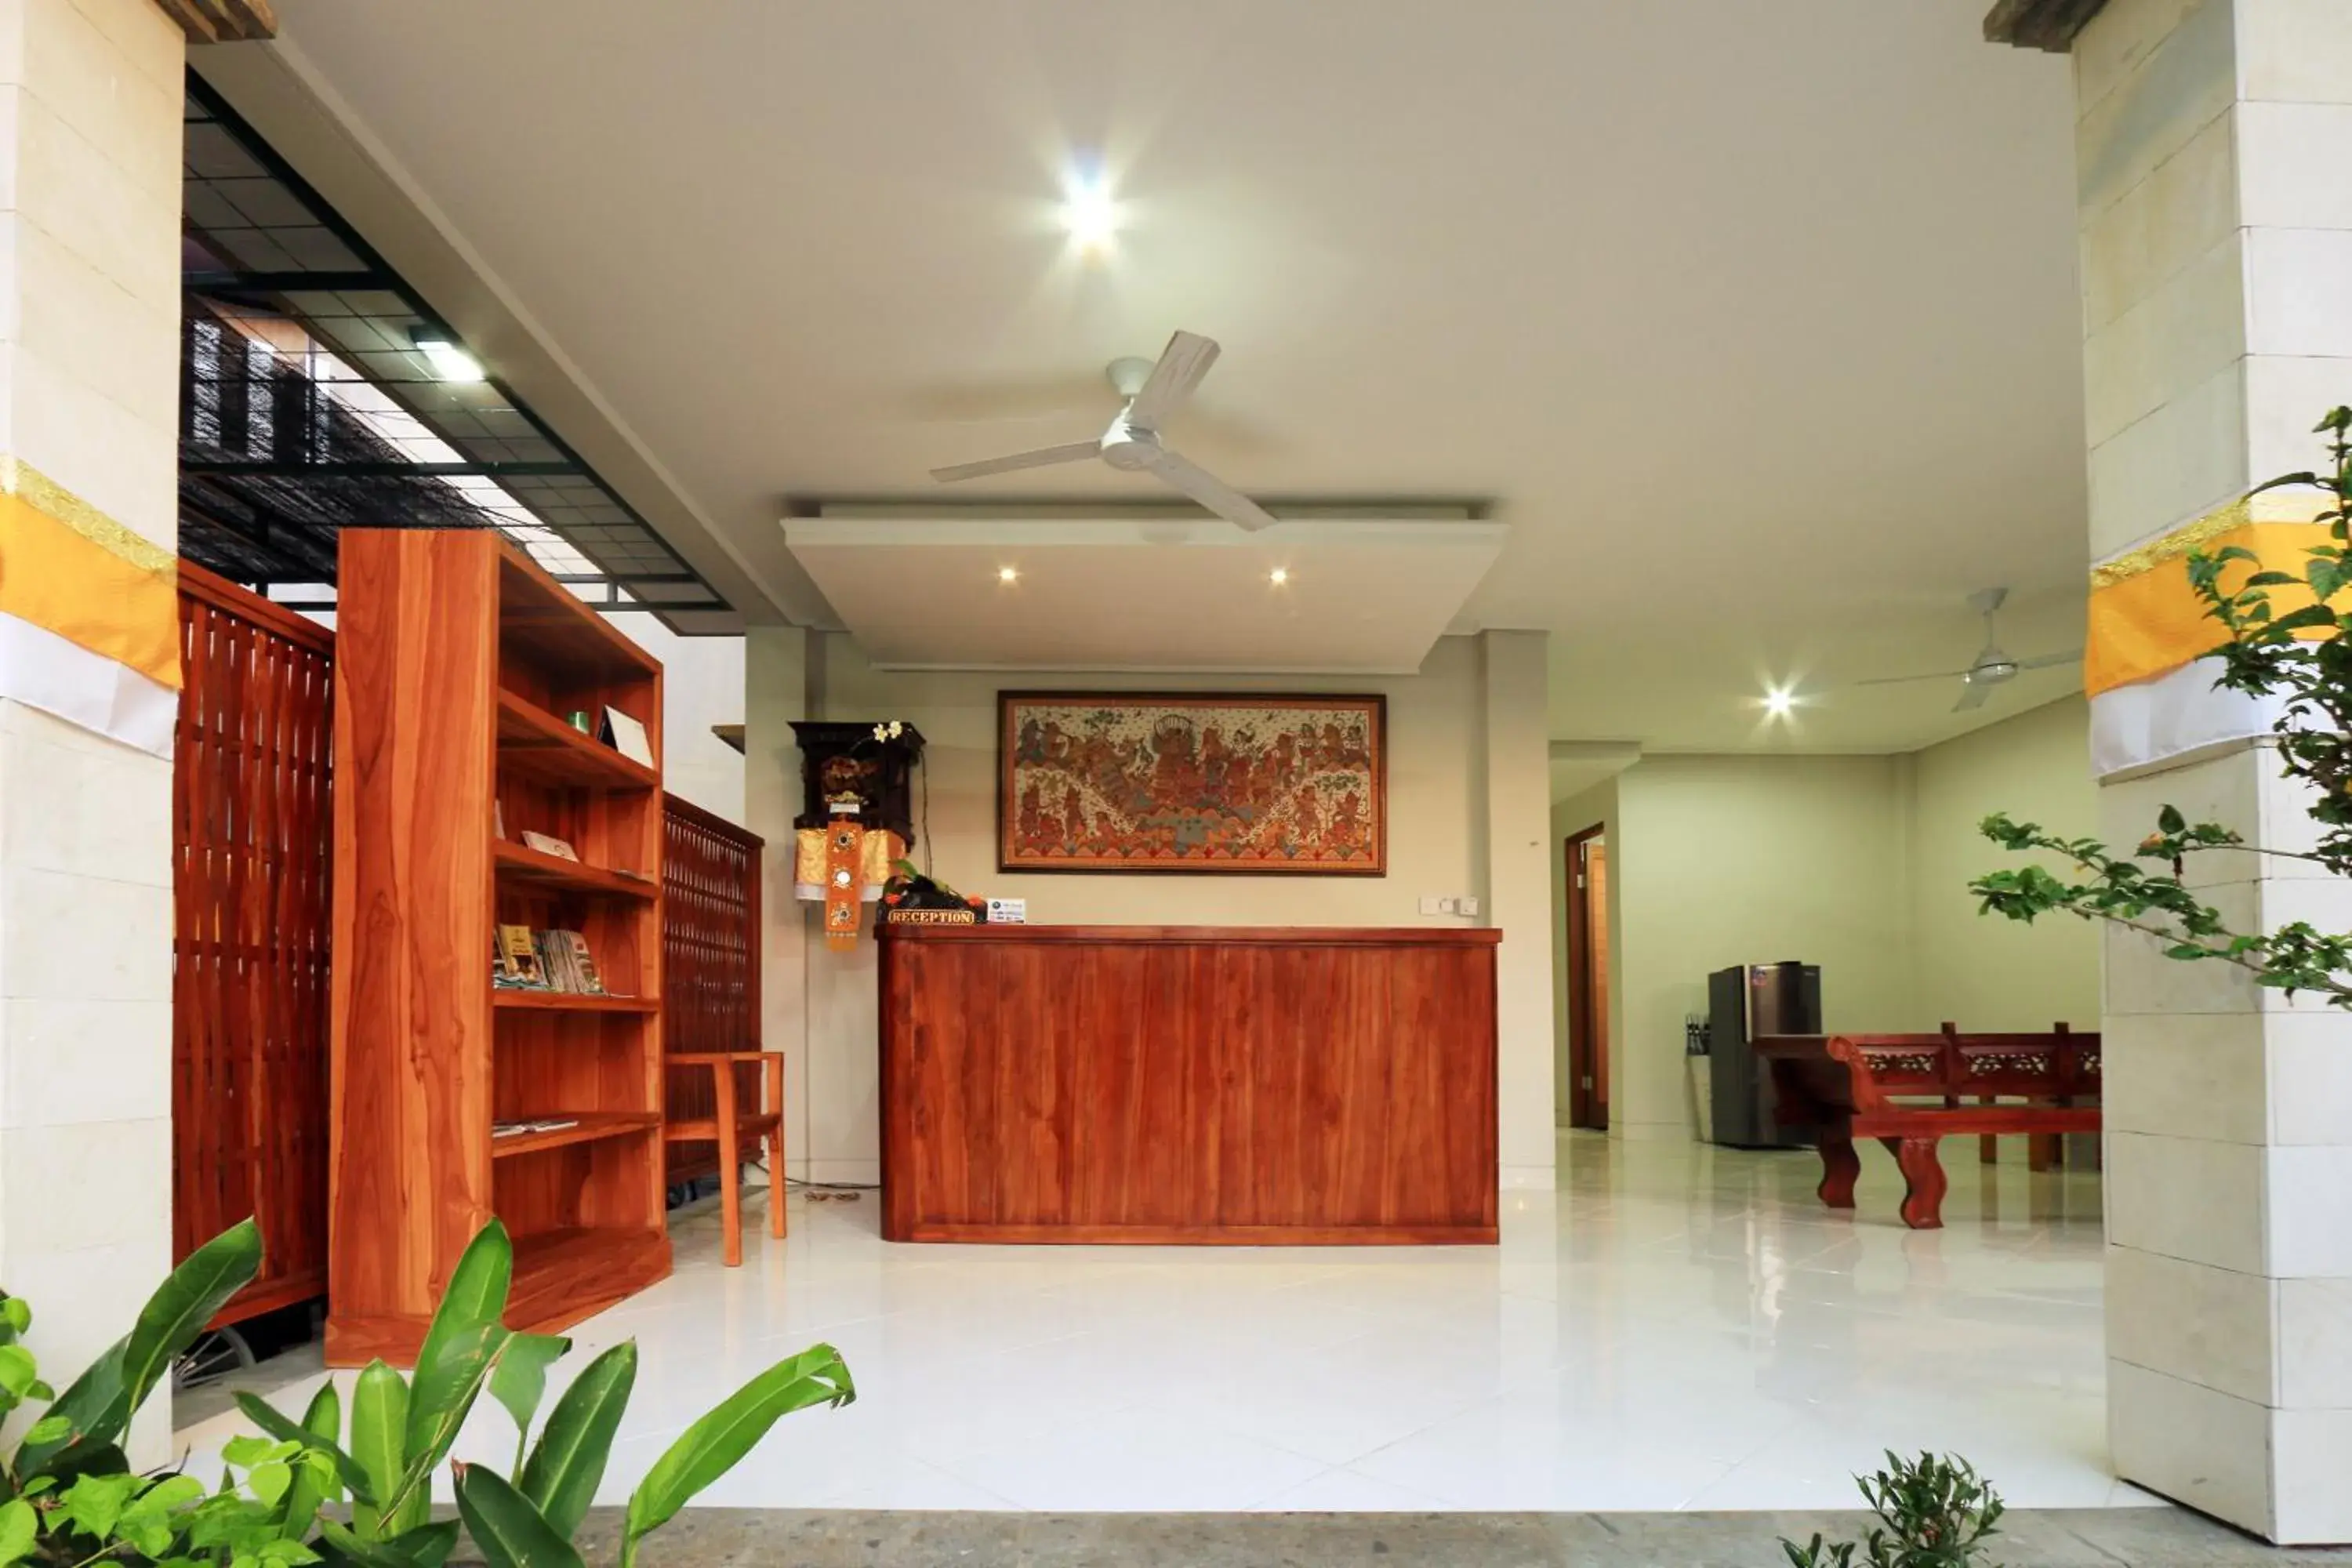 Lobby or reception, Lobby/Reception in Ubud Tropical Garden